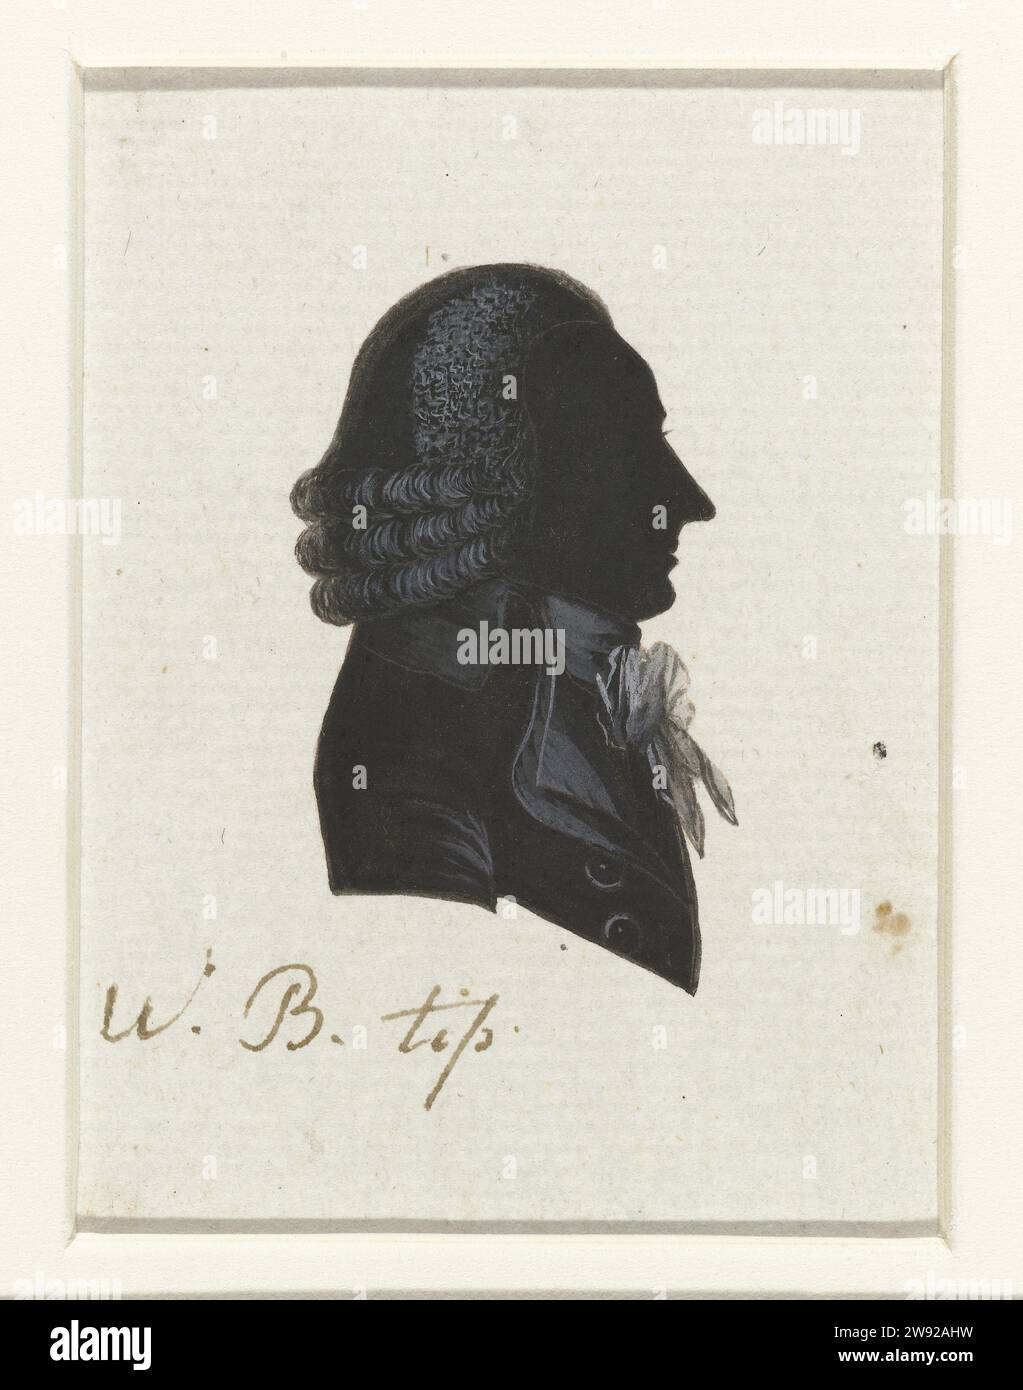 W.B. Tip, Hausdorff (possiblement), 1796 Silhouette de buste de profil à droite. Suspendu en trois rouleaux de cheveux bouclés en trois rouleaux en trois rouleaux. Cravate nouée. Inscription ; O. : W. B. Tip. Papier néerlandais. Encre d'Inde (encre) dessinant des personnages historiques (+ portrait de profil) la Haye. Westzaan Banque D'Images